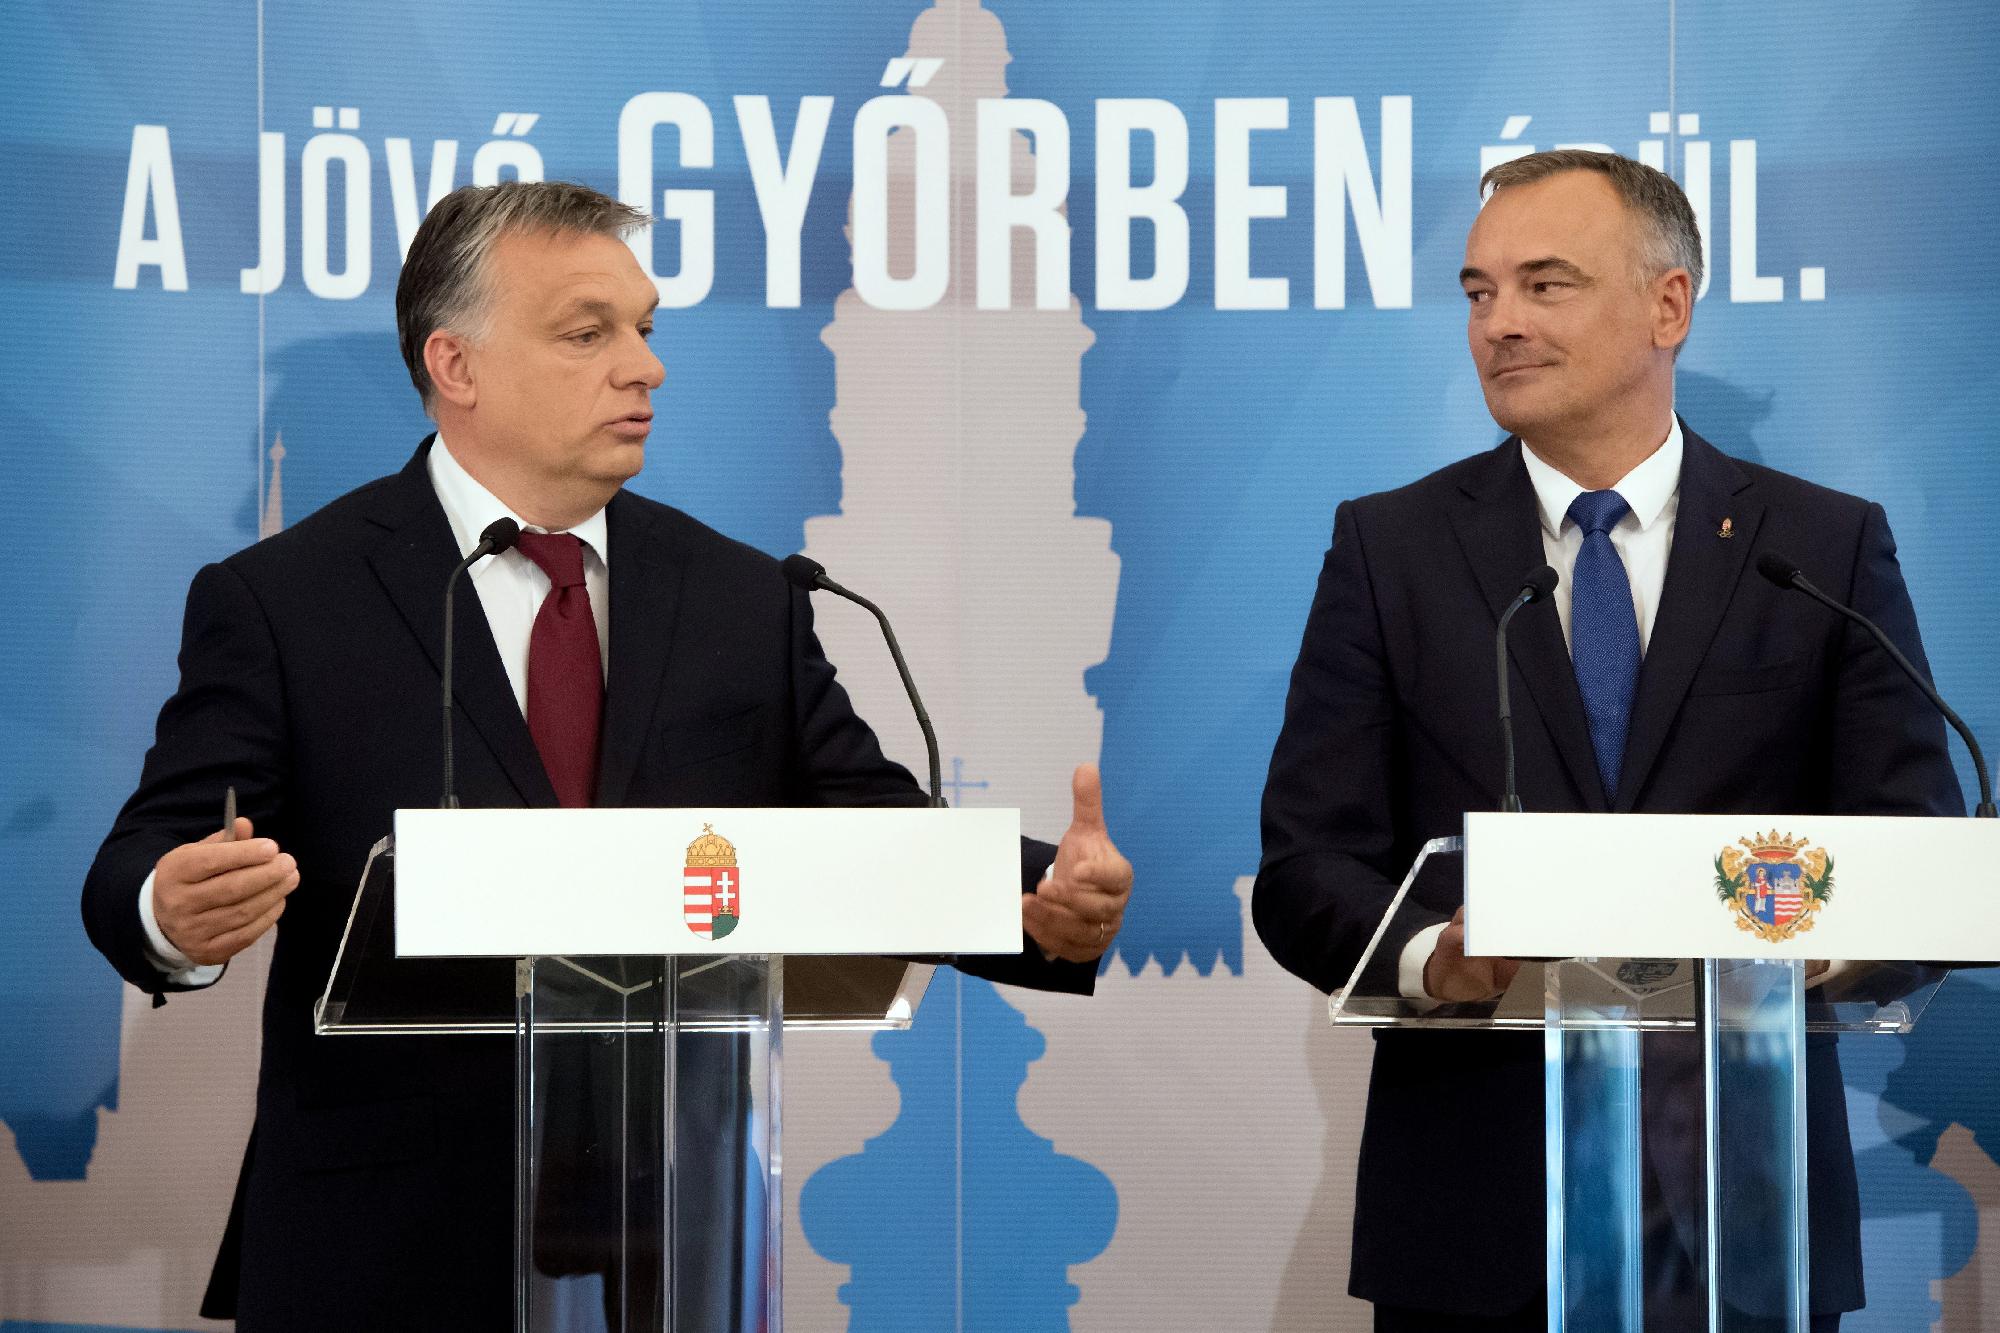 Modern városok - Orbán Viktor Győrben 